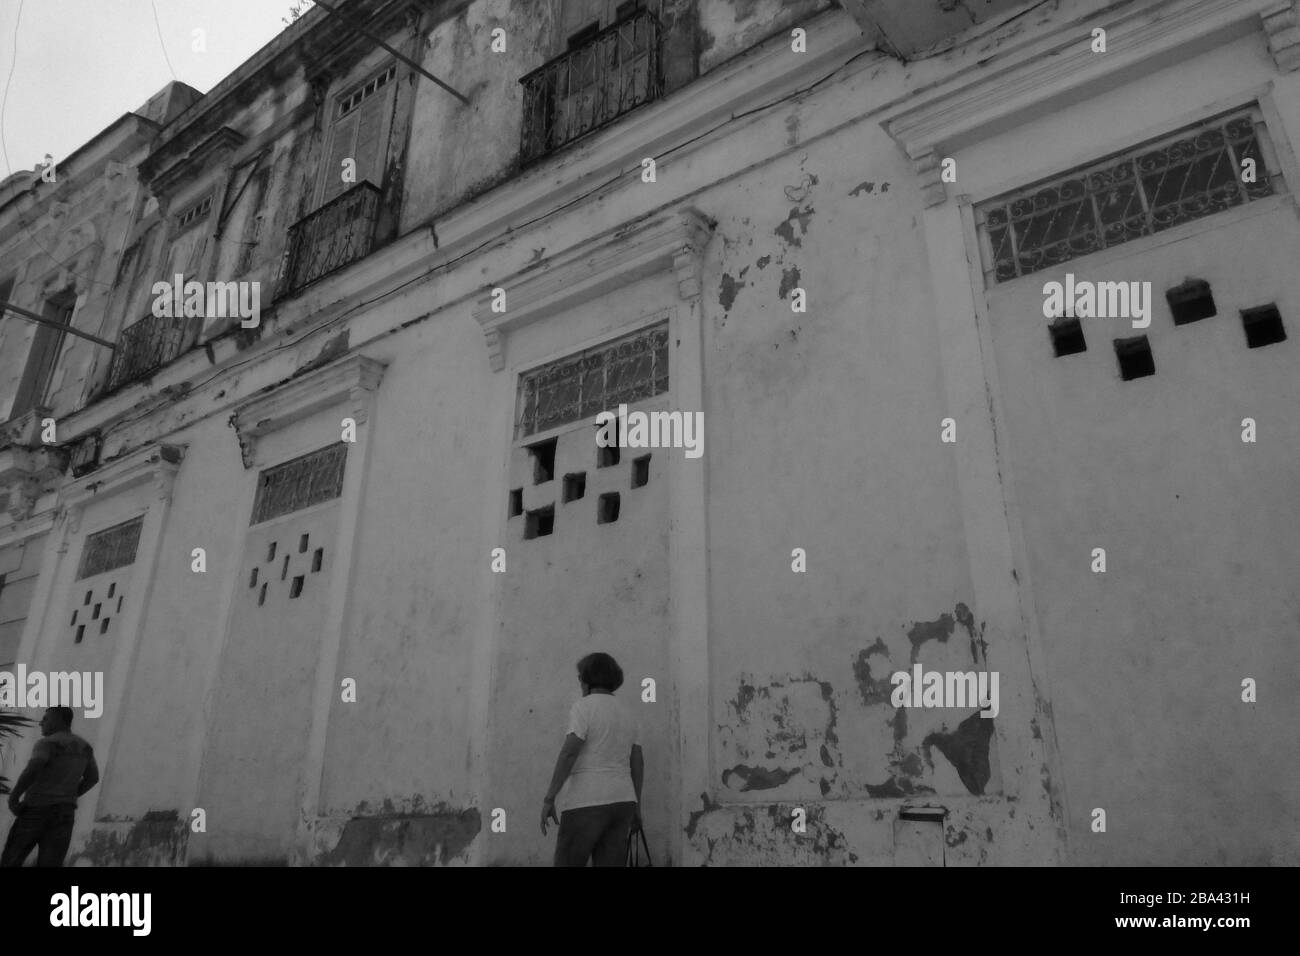 Les bidonvilles ont endommagé le bâtiment et les rues en décomposition à la Havane Cuba mur art peinture noir et blanc râper vieux style à l'extérieur de la rue personnes personne sale rail Banque D'Images